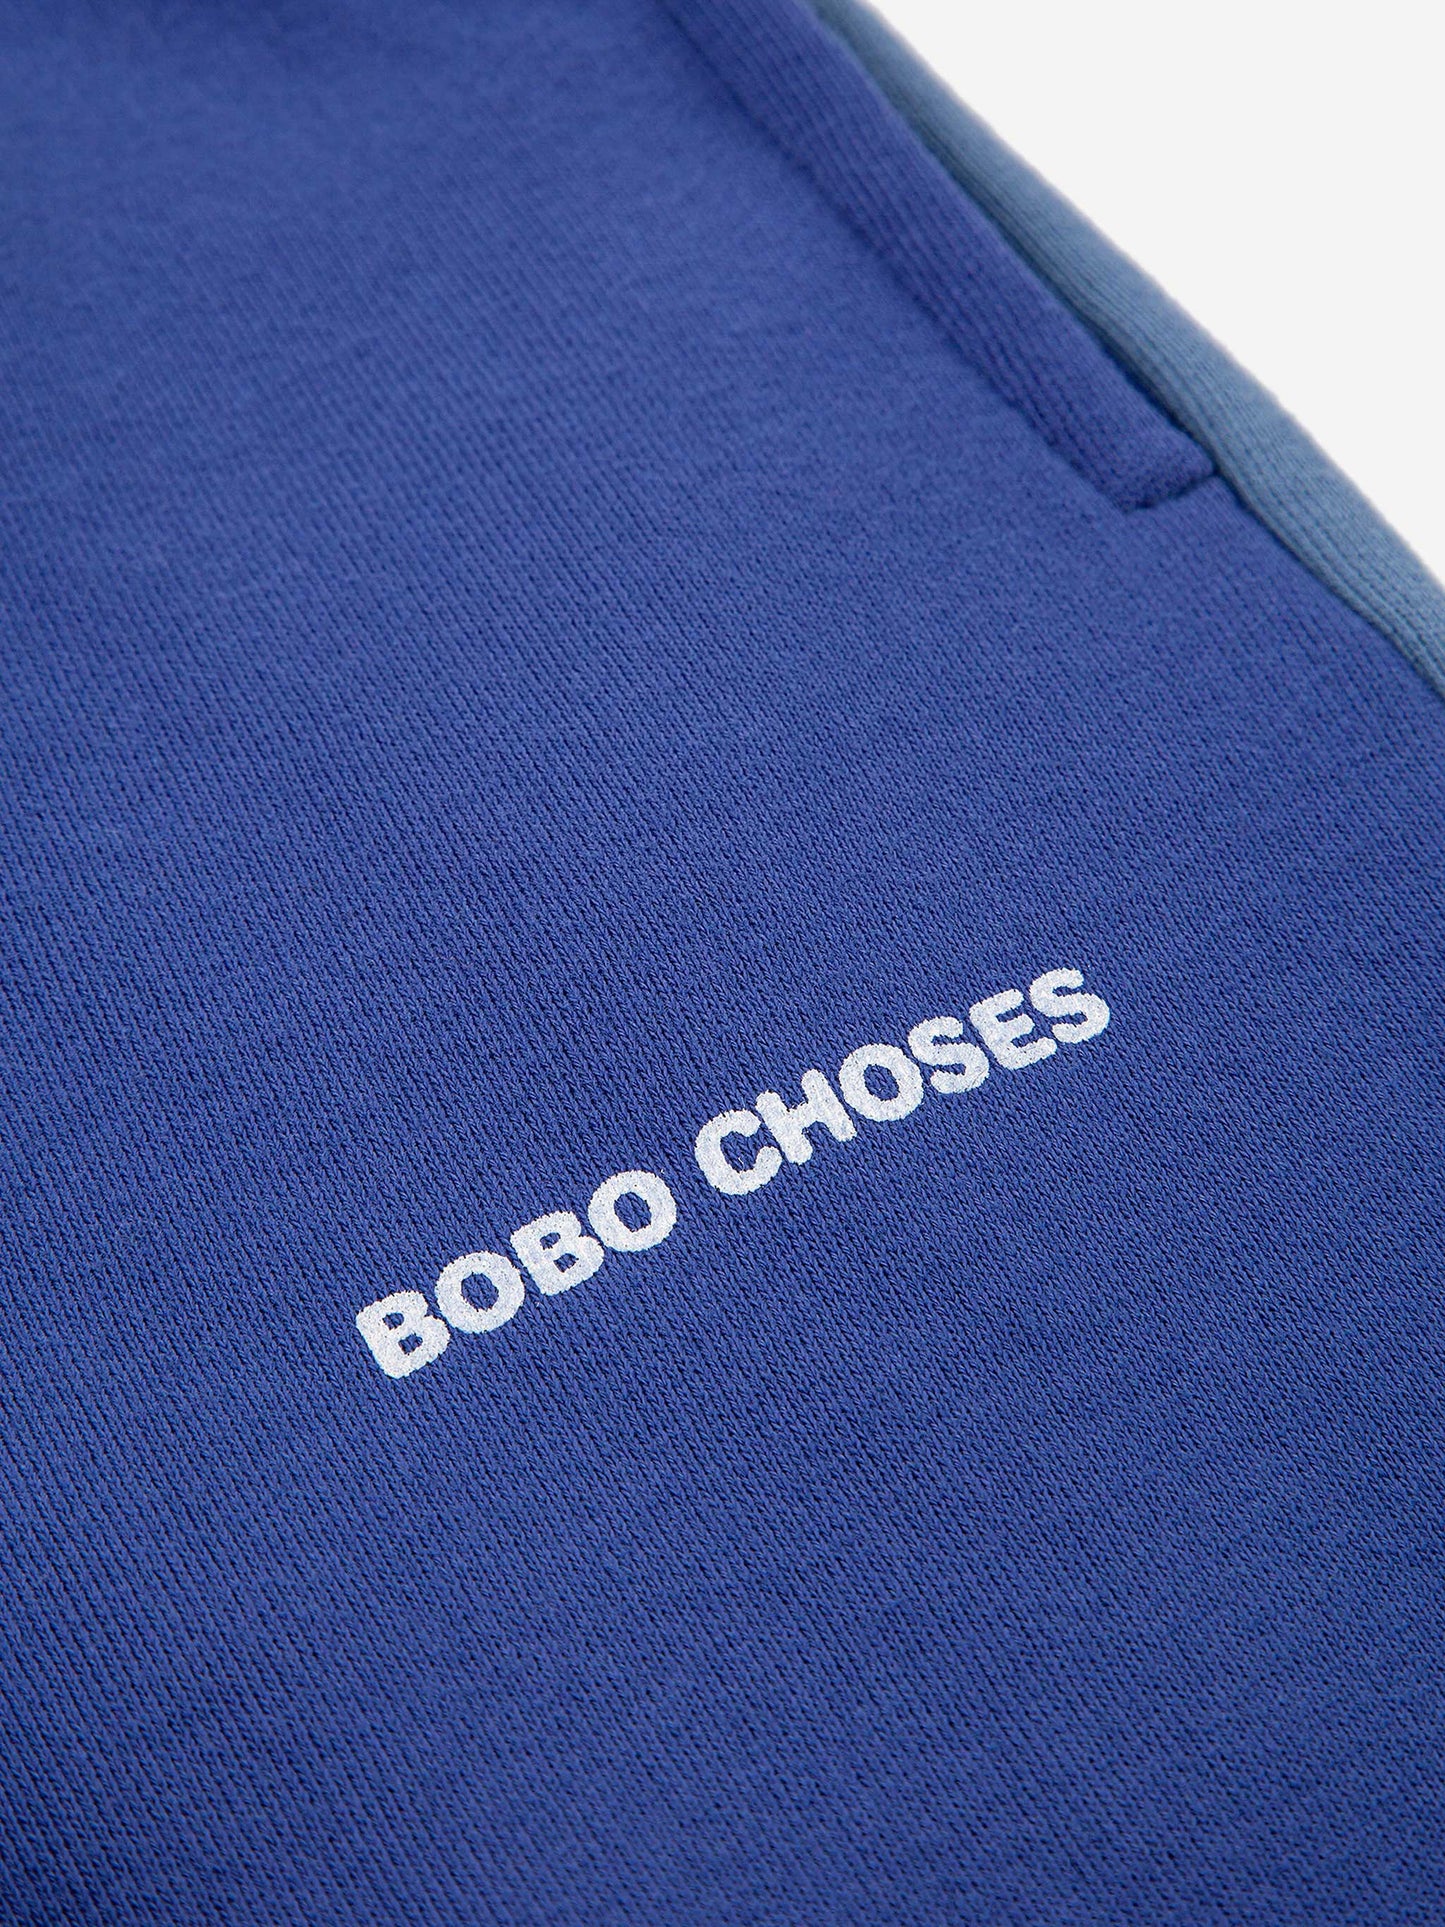 Pantalón deportivo Bobo Choses